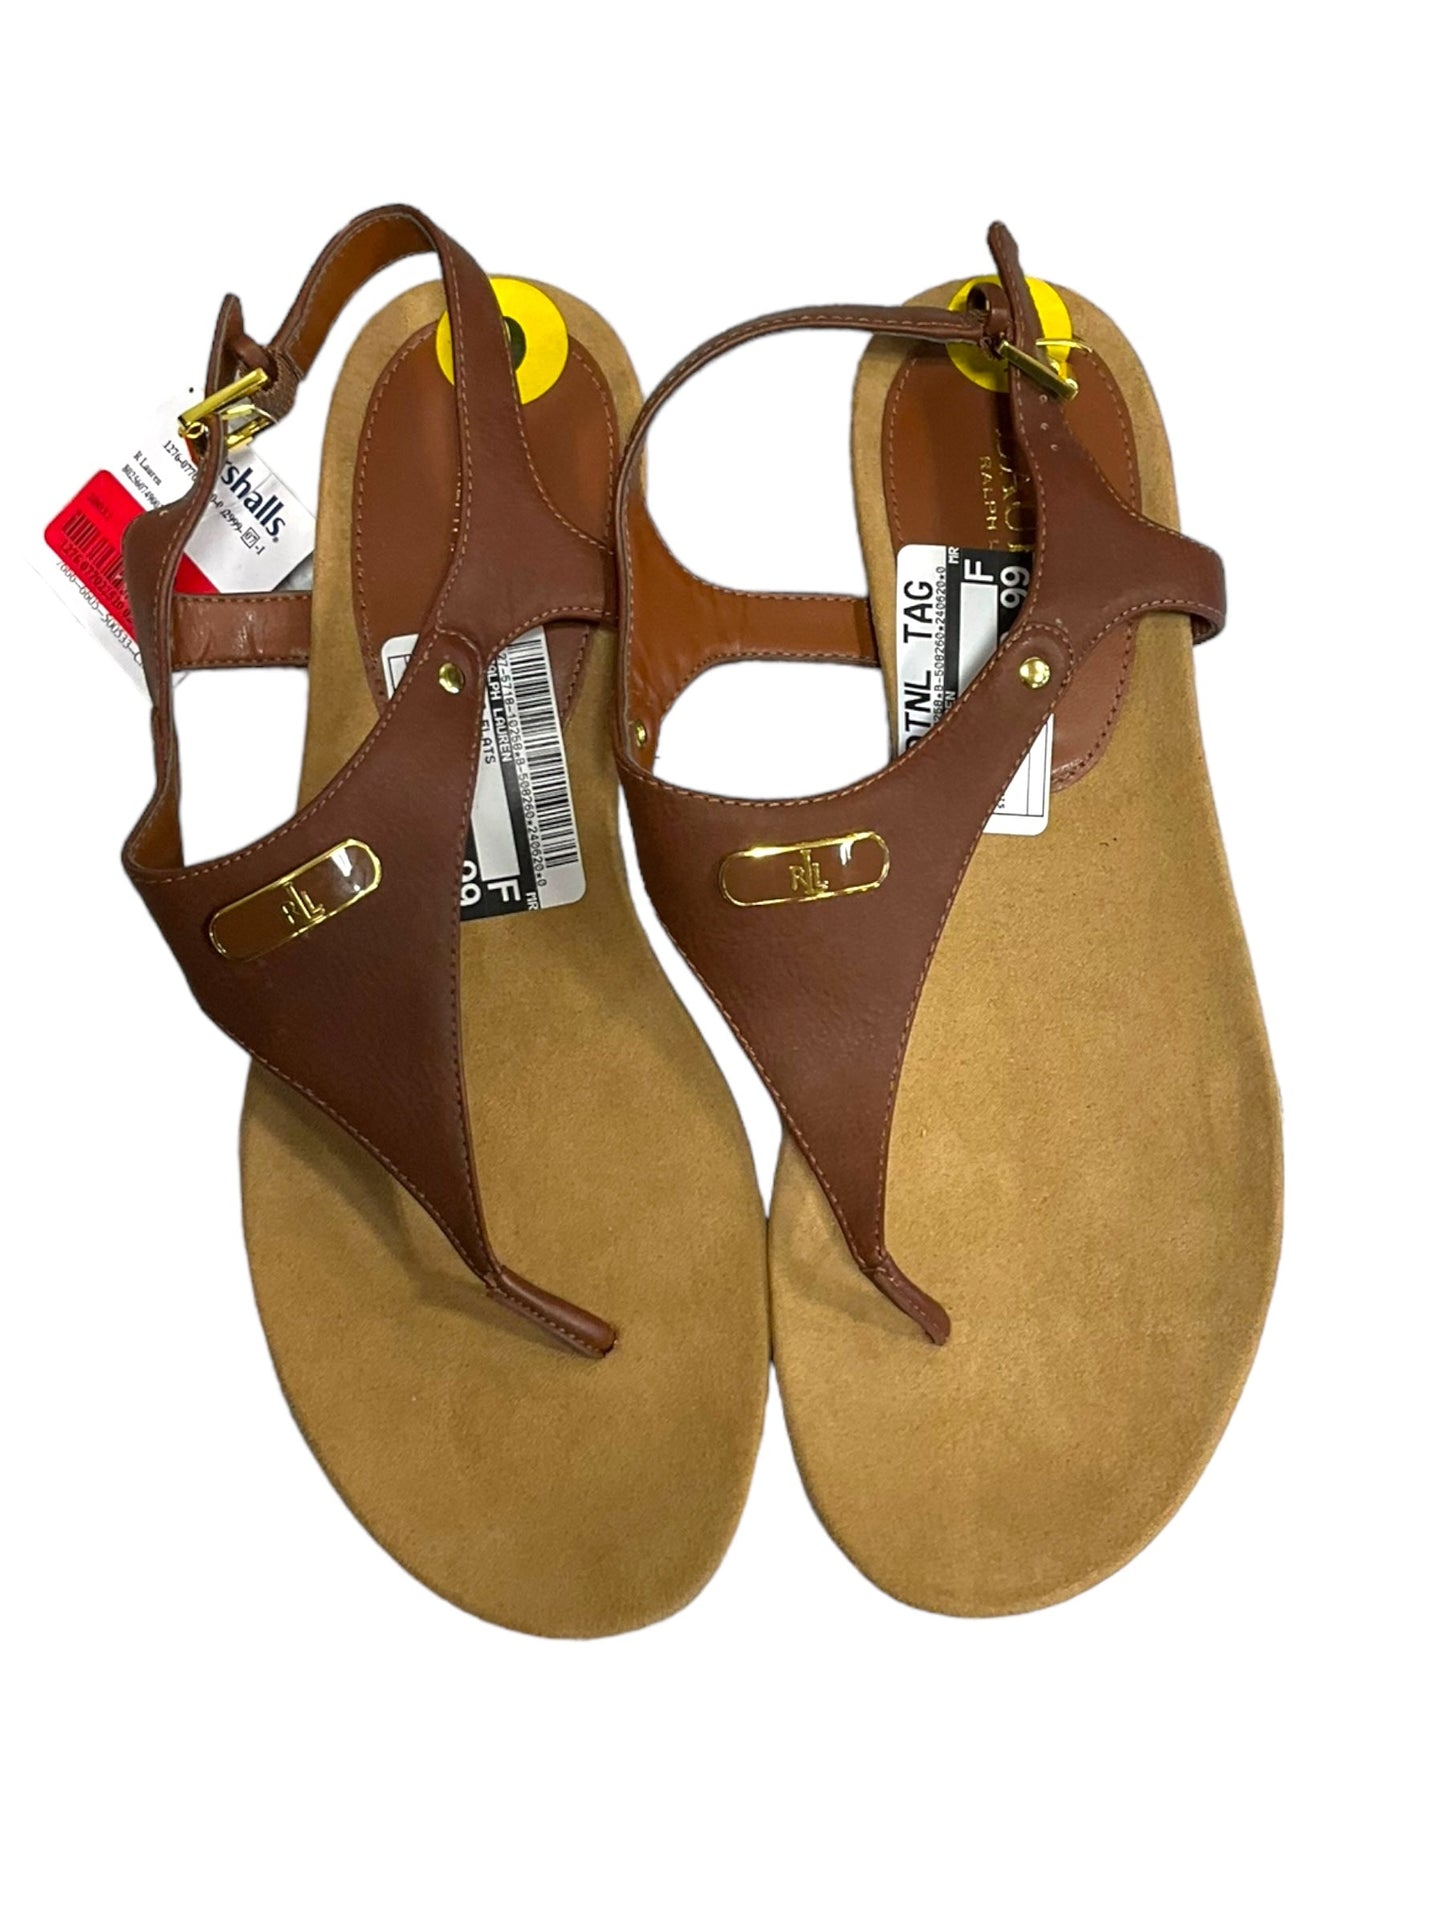 Brown Sandals Flats Ralph Lauren, Size 9